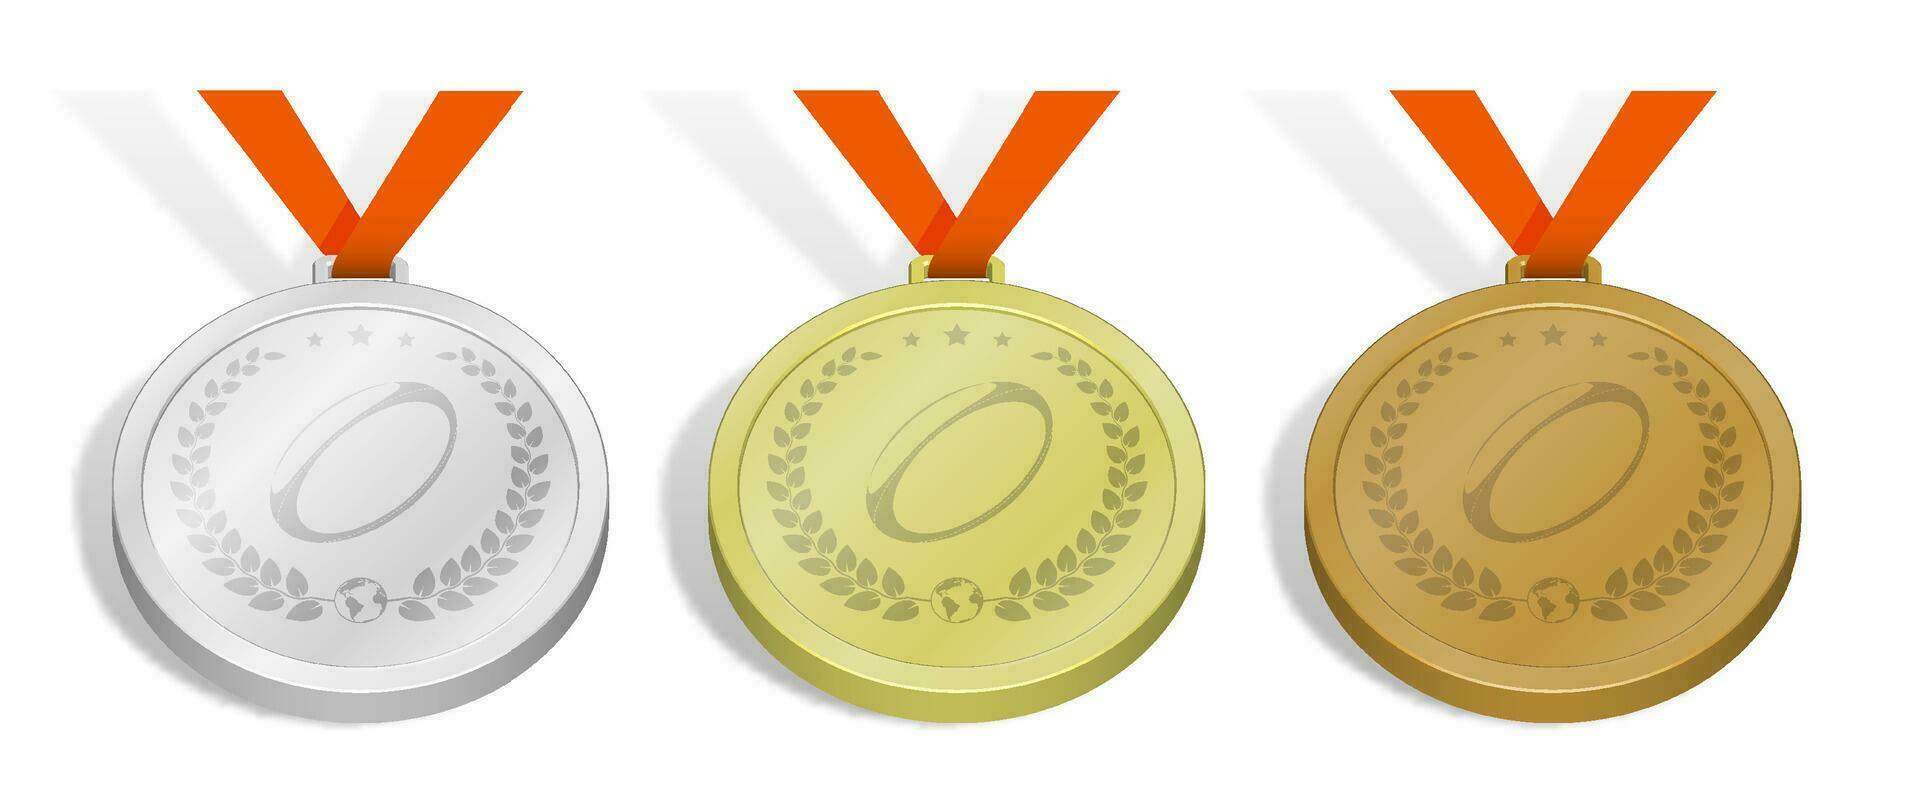 impostato di sport medaglie con emblema di Rugby palla con alloro ghirlanda per concorrenza. oro, argento e bronzo premio con arancia nastro. 3d vettore